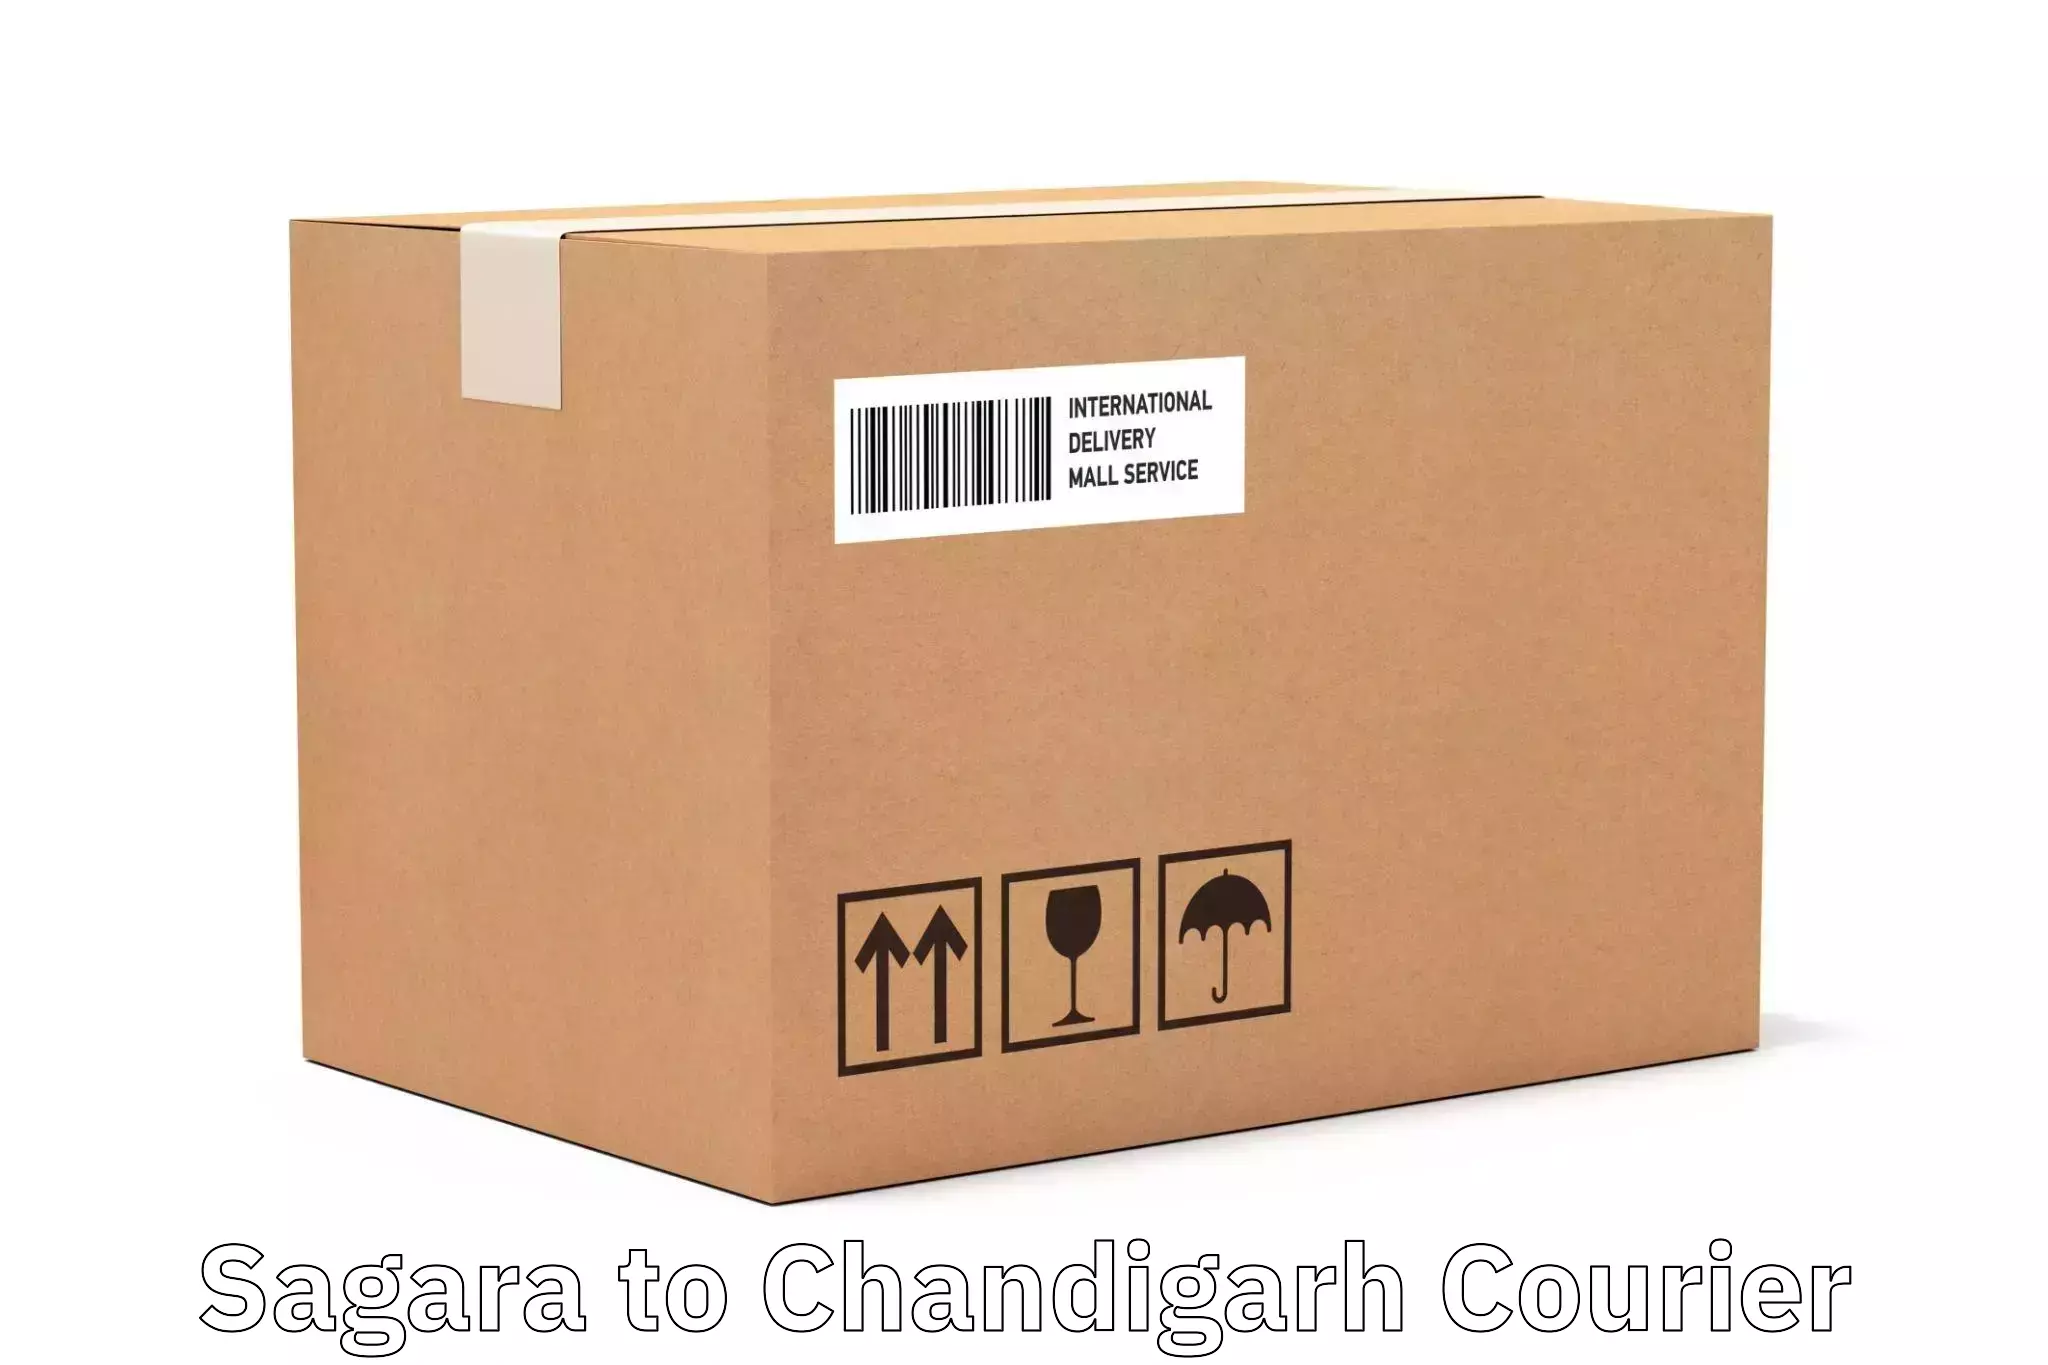 Efficient order fulfillment in Sagara to Chandigarh